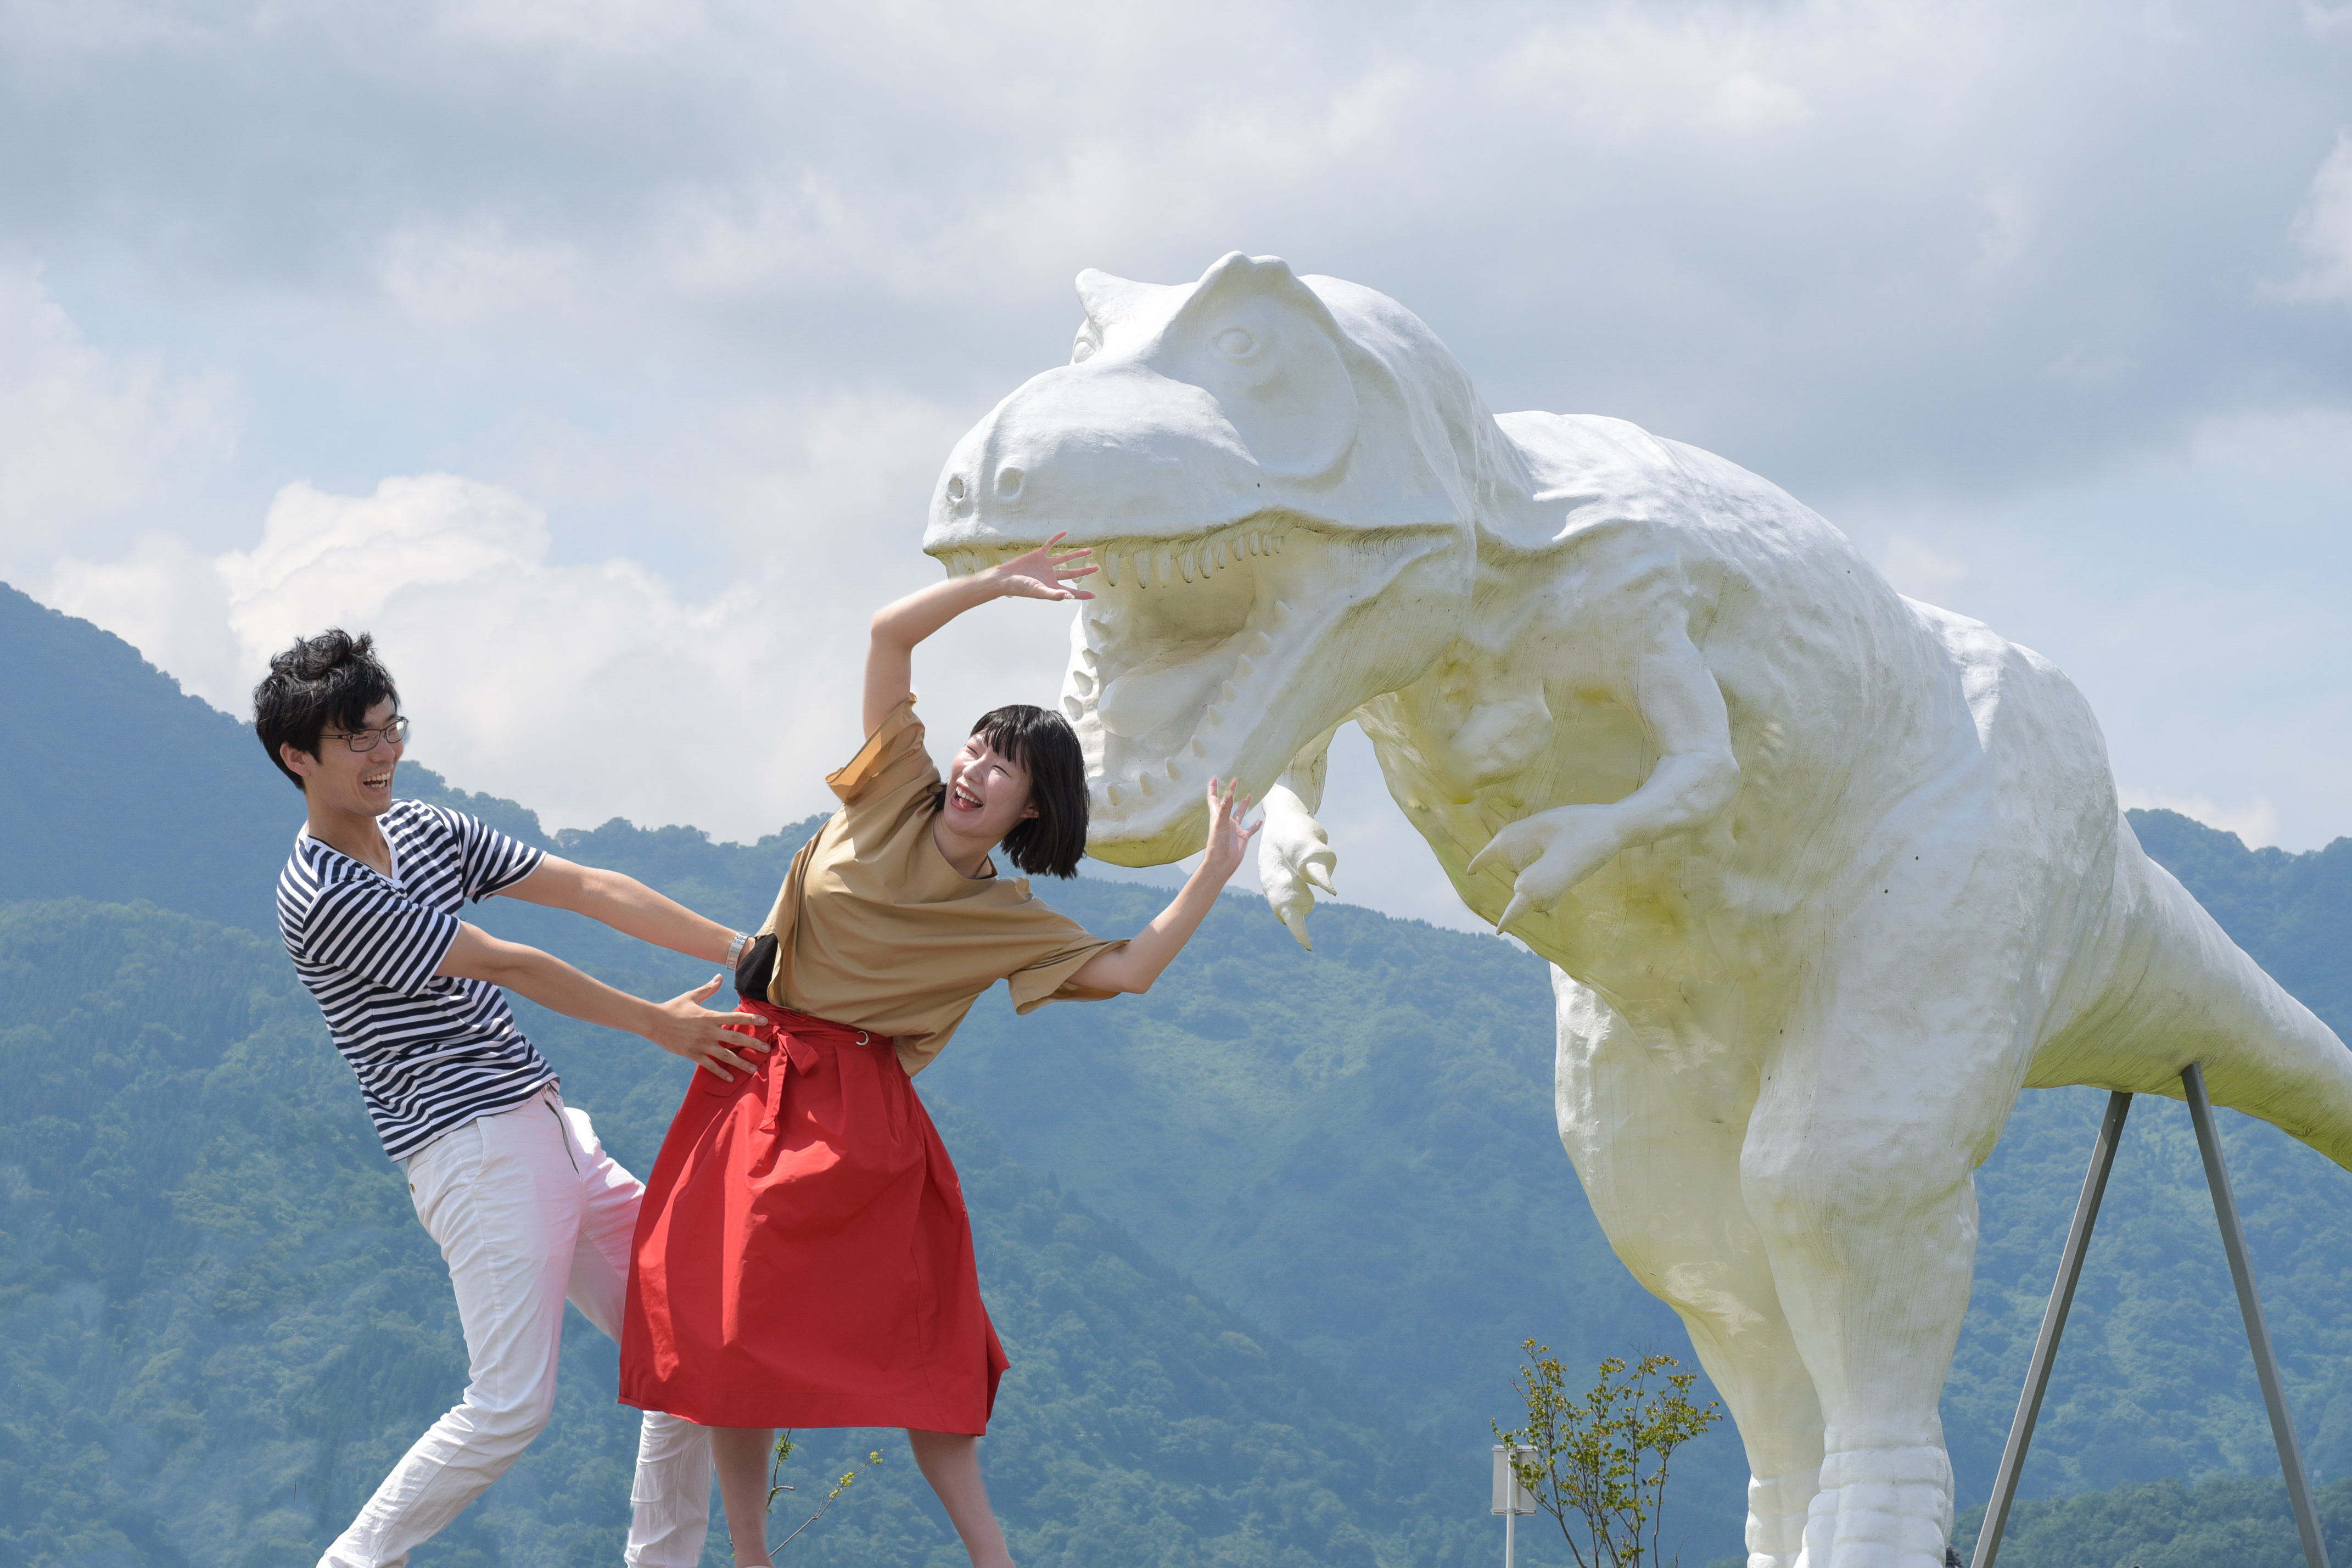 青空に映える真っ白な恐竜を撮影しよう 勝山の人気フォトスポット ホワイトザウルスとは Dearふくい 福井県のローカルメディア